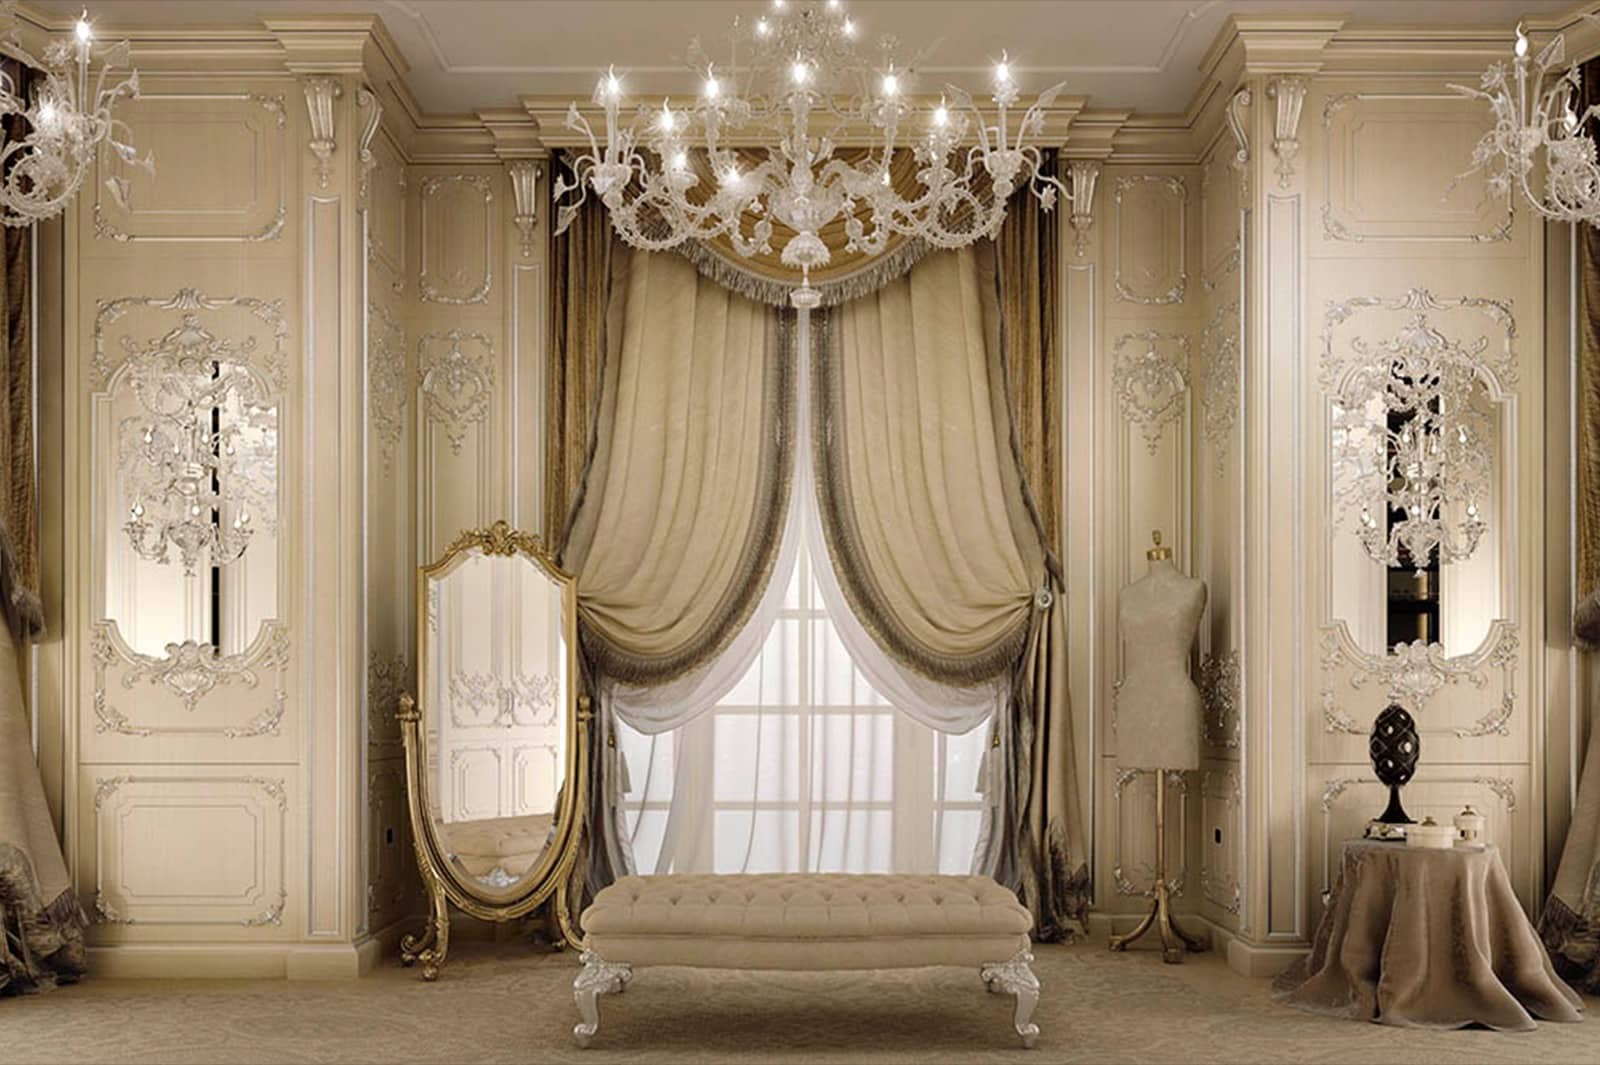 经典豪华别墅的装饰 窗帘面板 壁板 配件 壁纸 枝形吊灯 施华洛世奇金色细节 优雅的面料 最优质的意大利制造创意